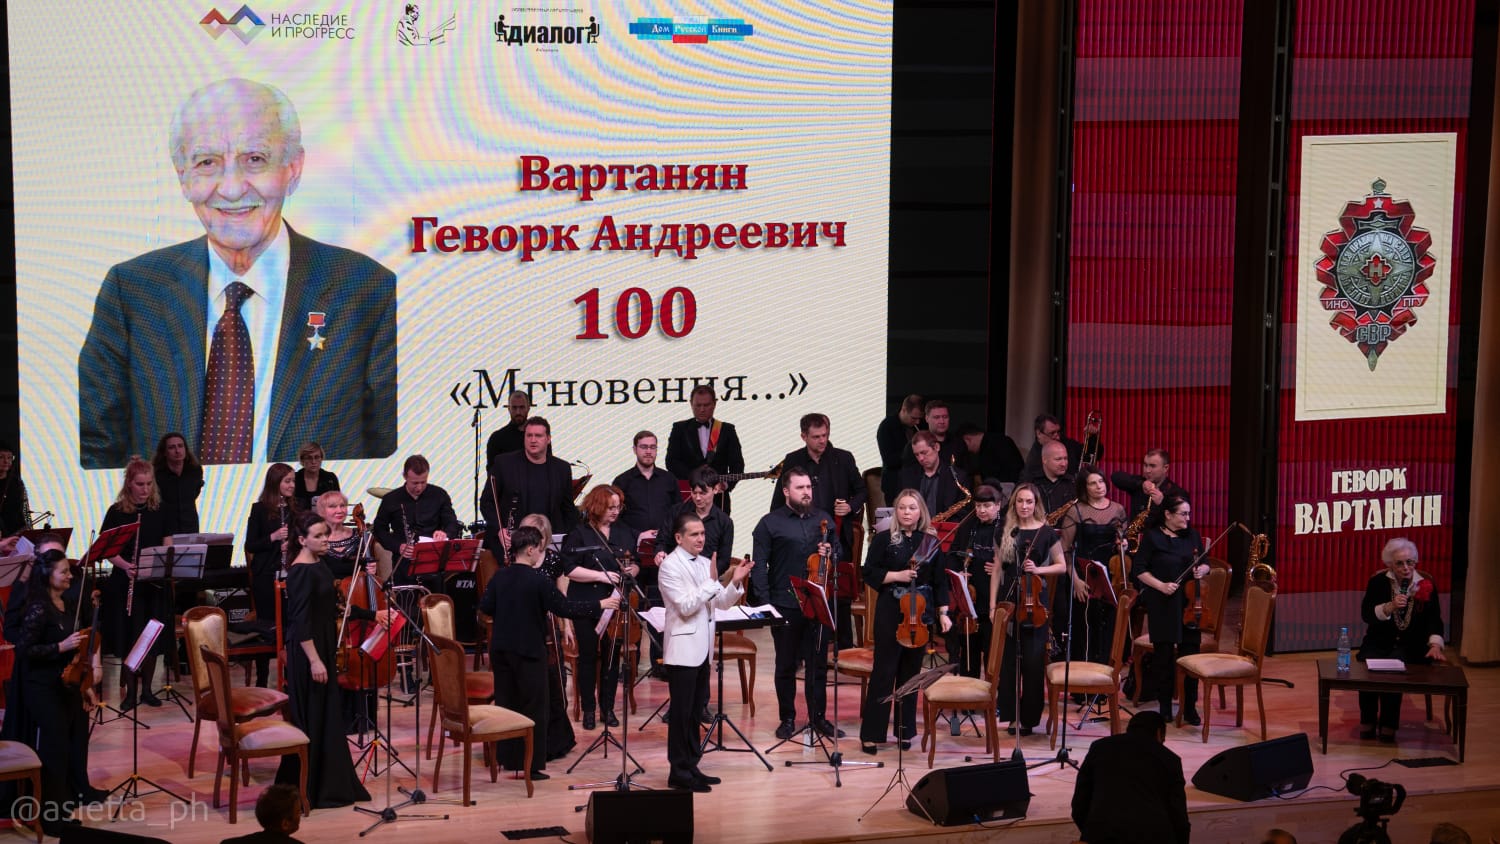 ТАСС о вечере "Мгновения": Нарышкин почтил память советского разведчика Геворка Вартаняна 